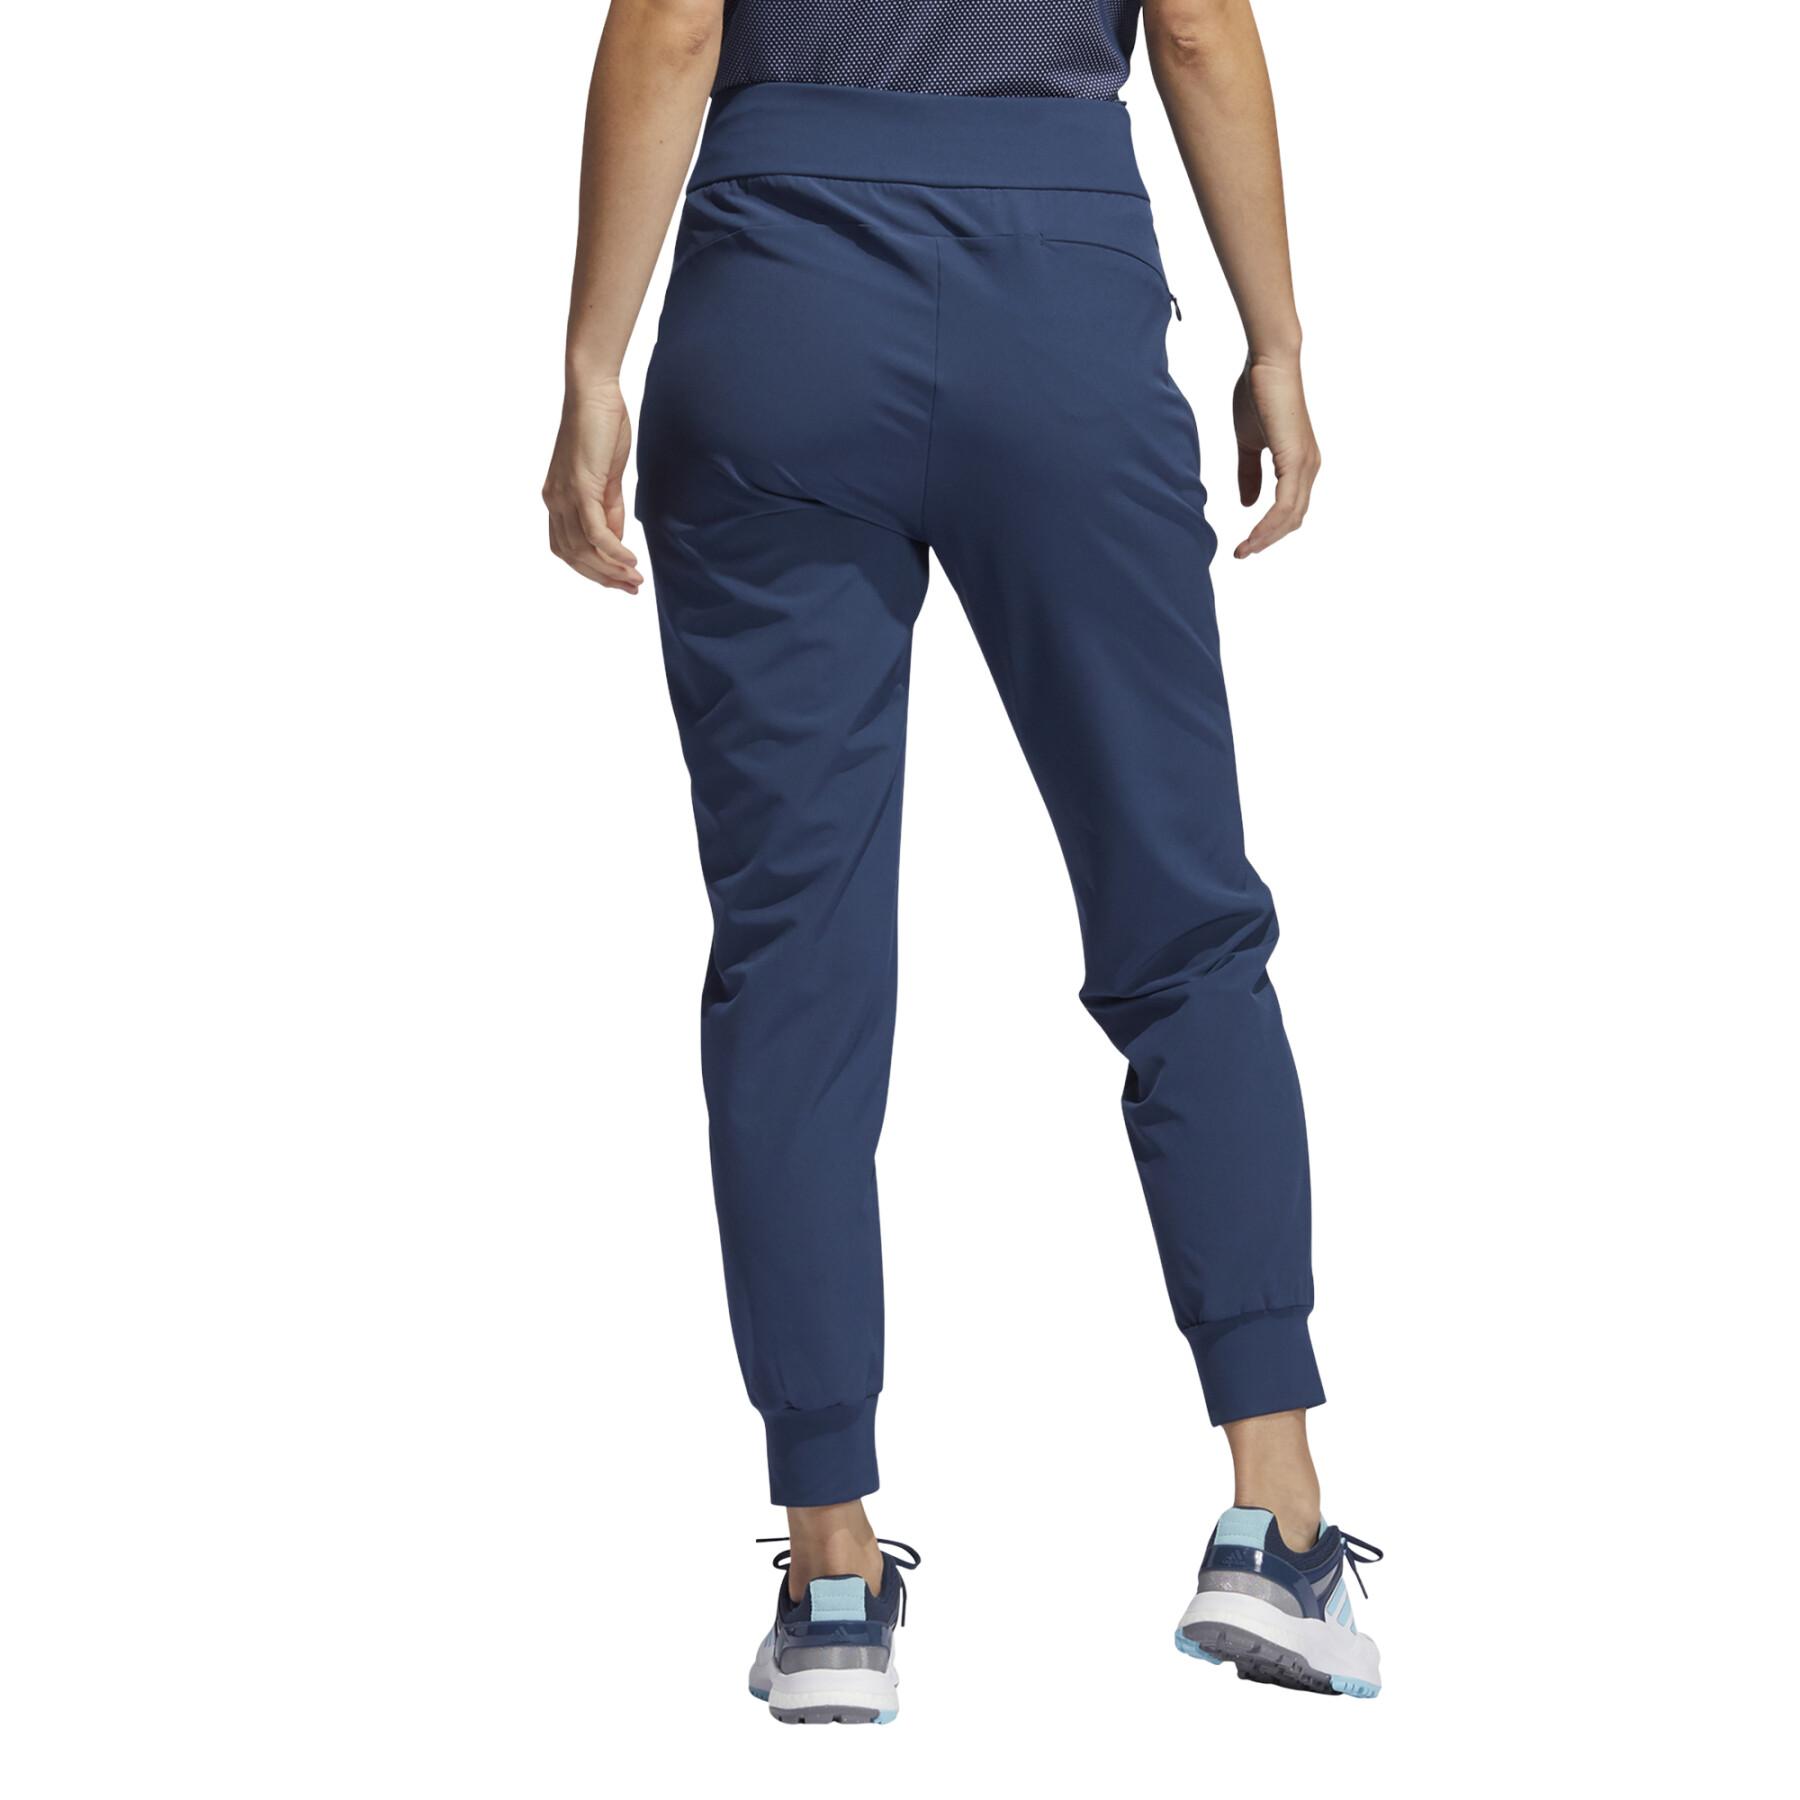 Pantalon de jogging femme adidas Stretch